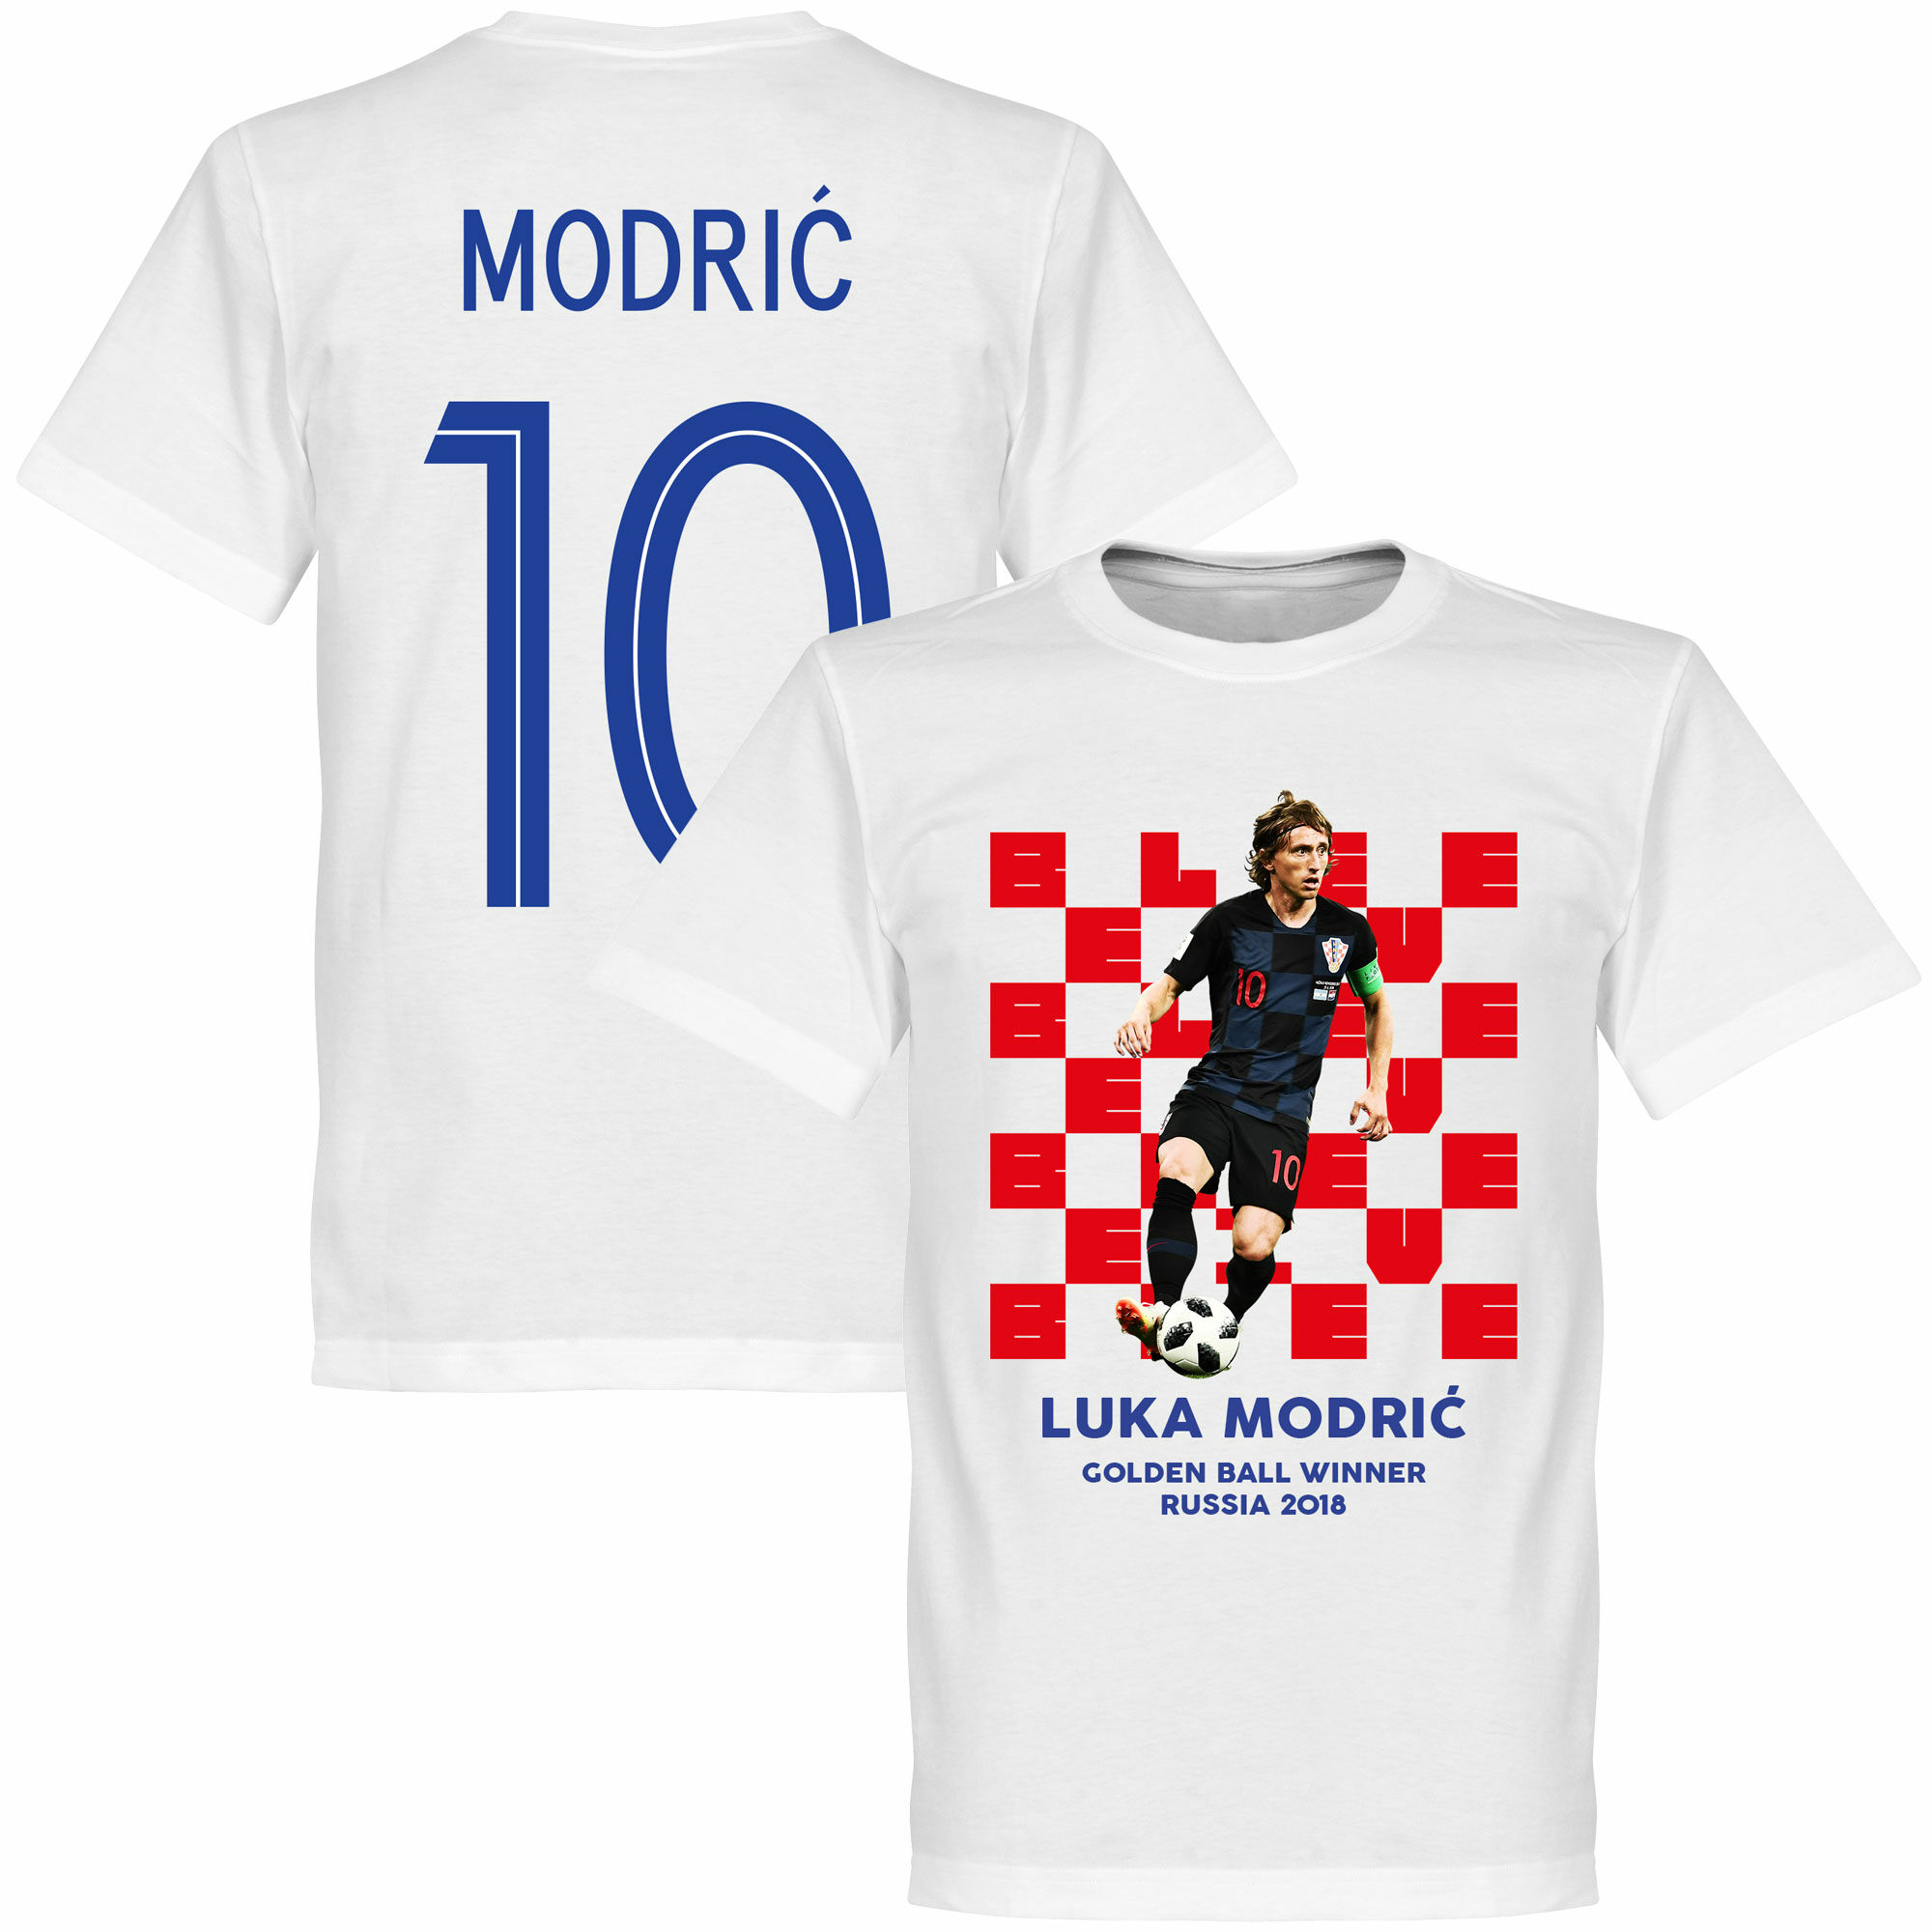 Chorvatsko - Tričko "Golden Ball Winner" - 2018, bílé, Luka Modrić, číslo 10